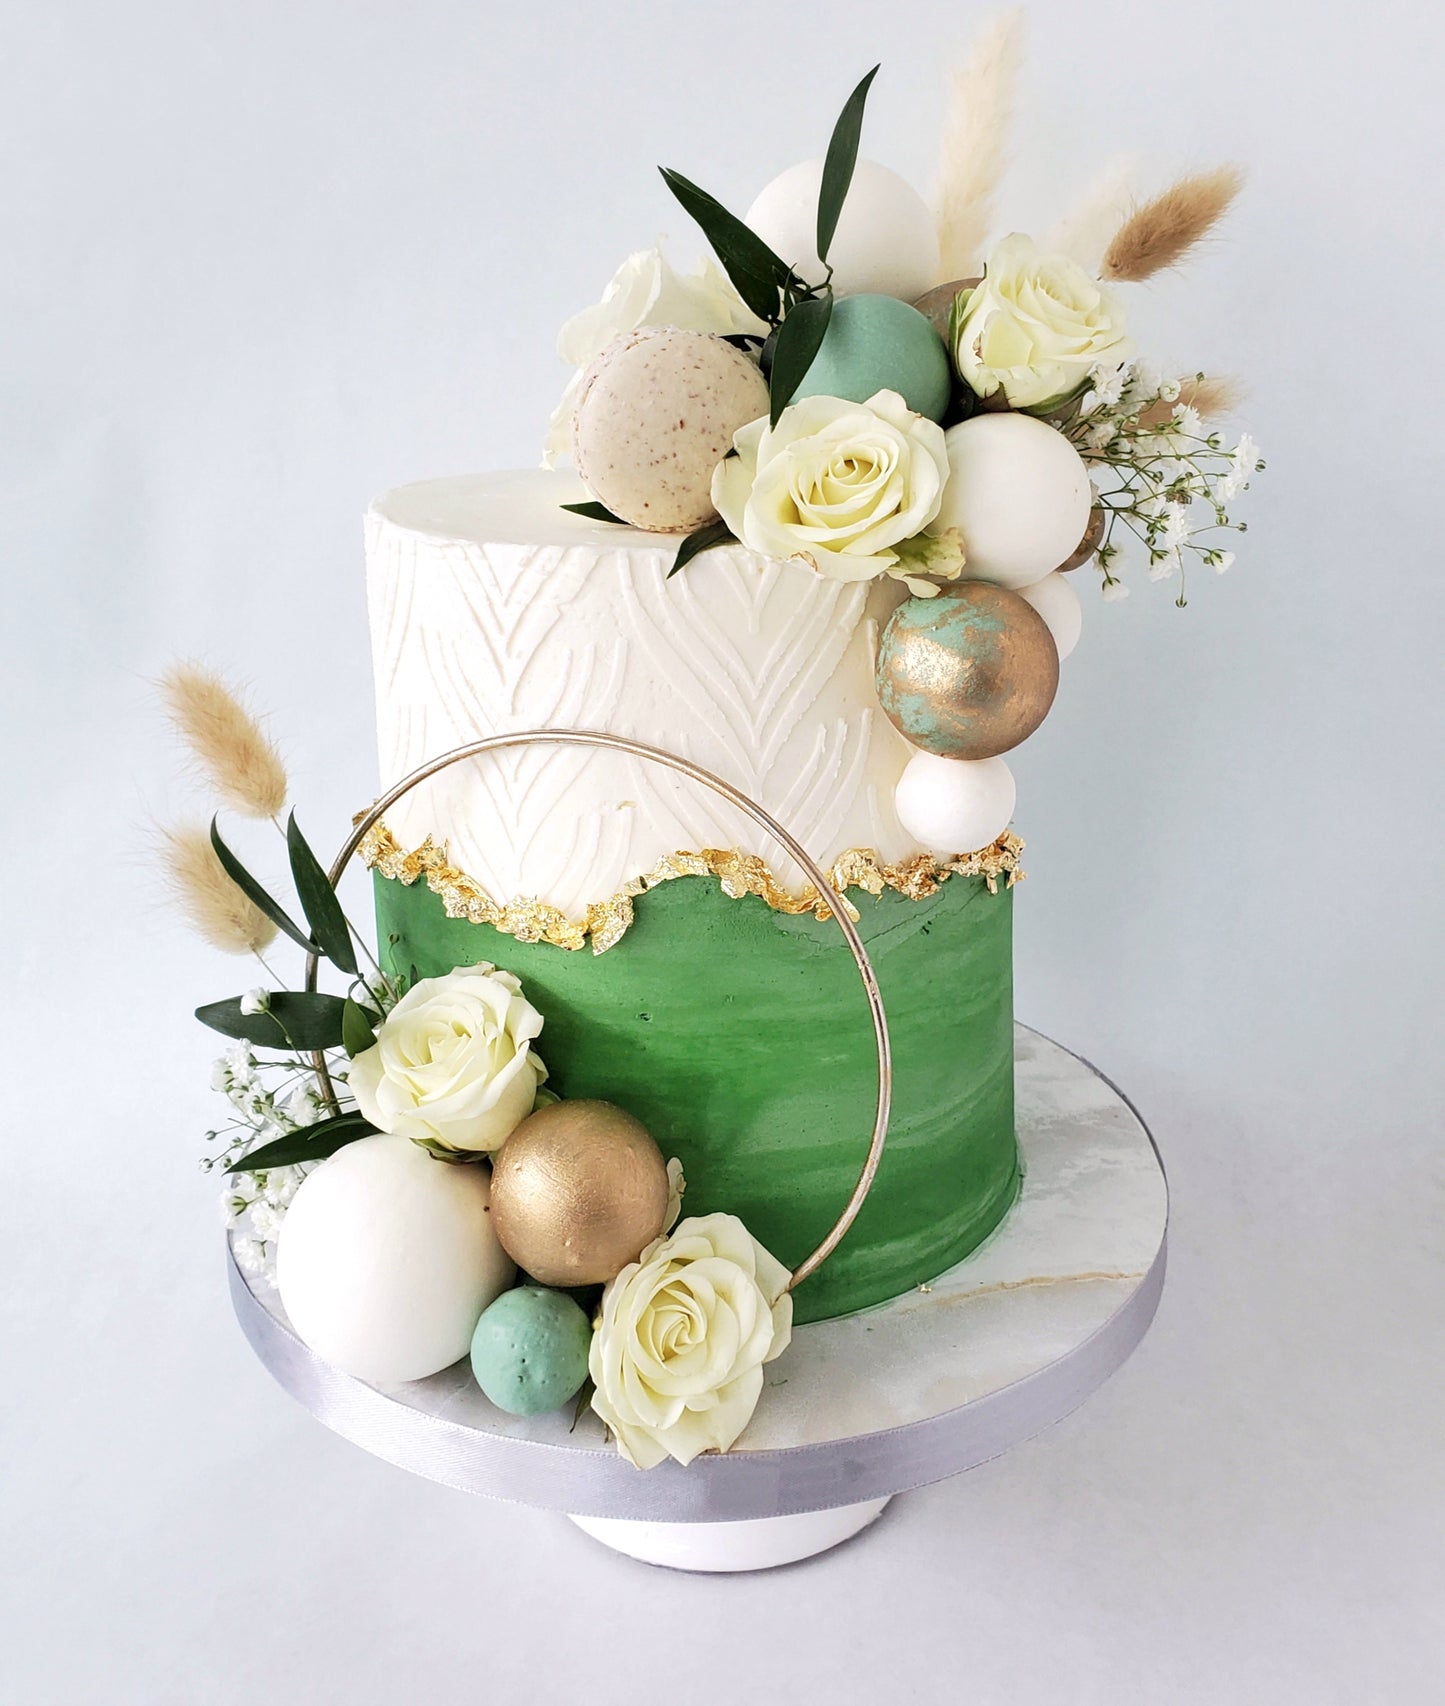 Intro to Cake Decorating (SUN DEC 10th)